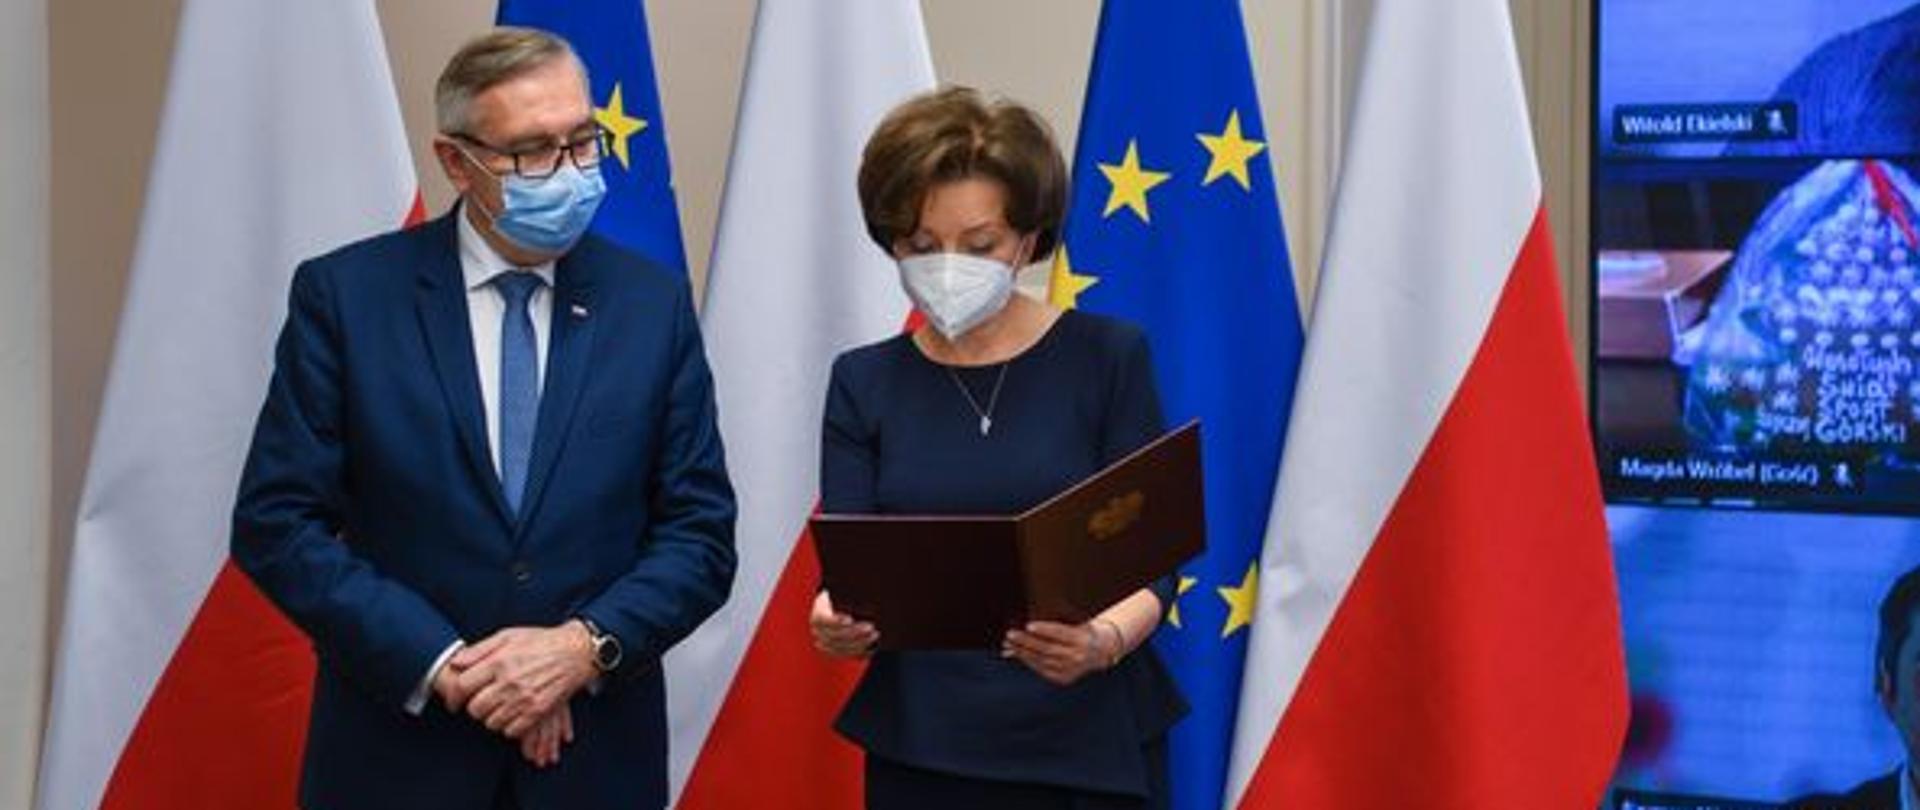 Na pierwszym planie stoją minister Maląg i wiceminister Szwed. W tle flagi Polski i Unii Europejskiej